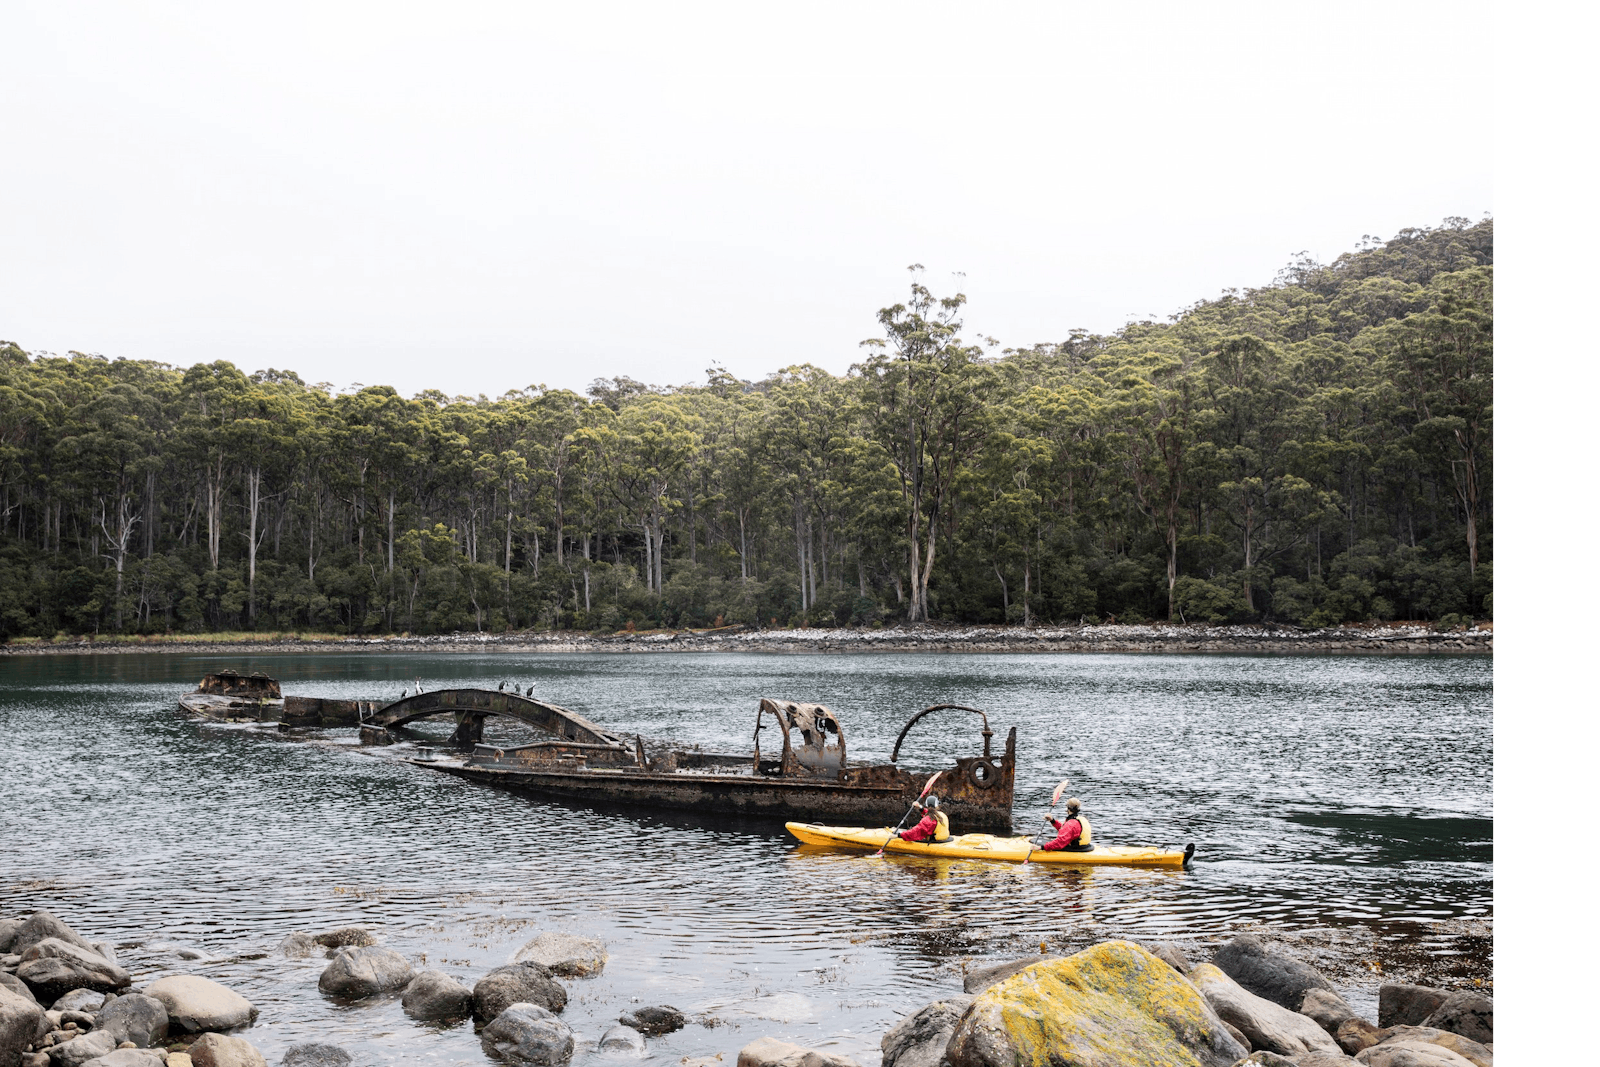 Kayaking beside the Totem Pole on the Tasman Peninsula